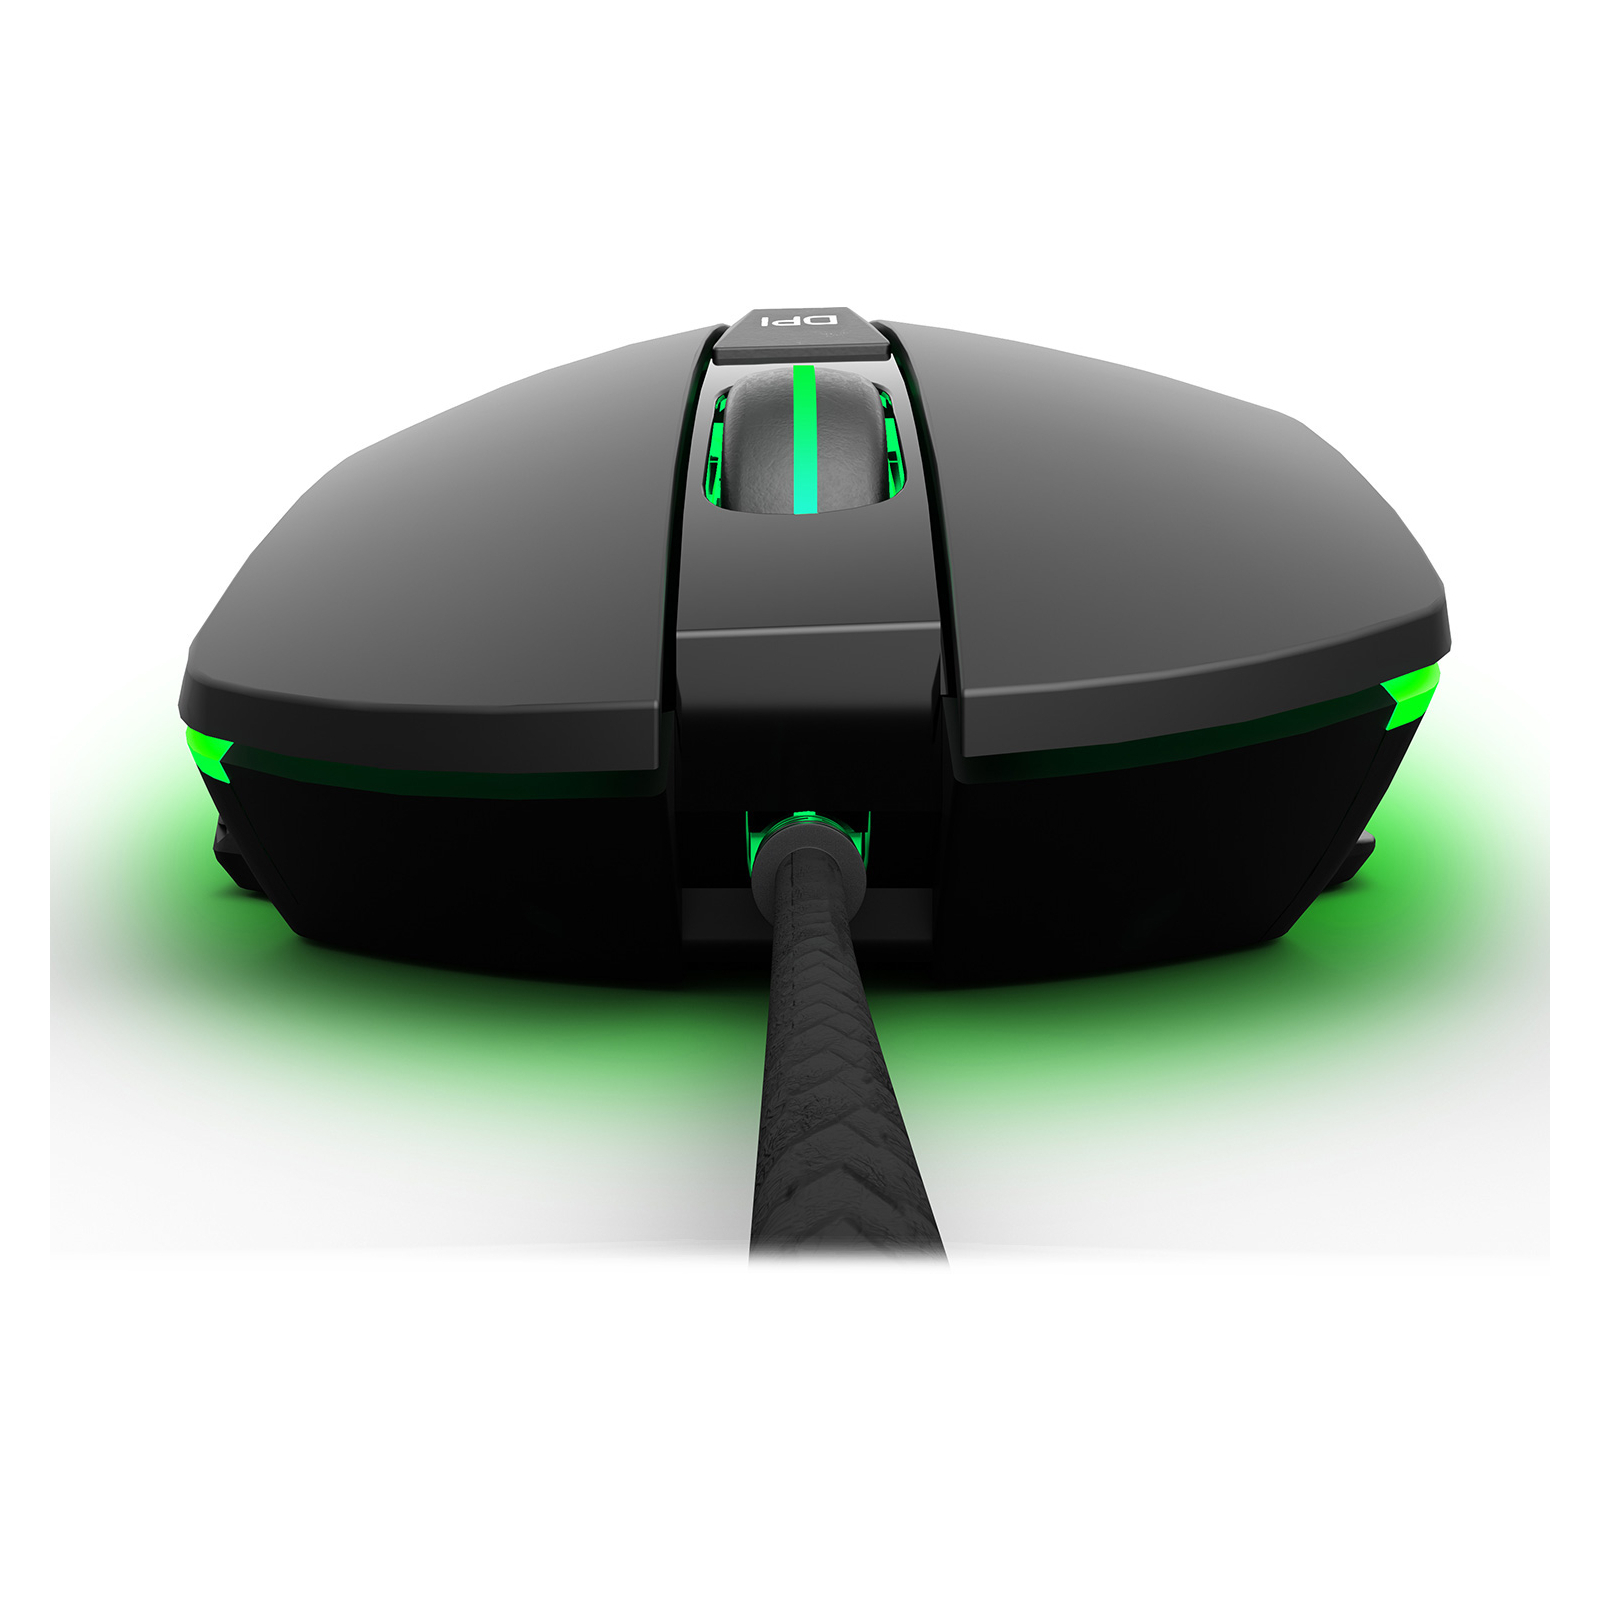 Мышка GamePro GM365 Nitro USB Black (GM365) изображение 6